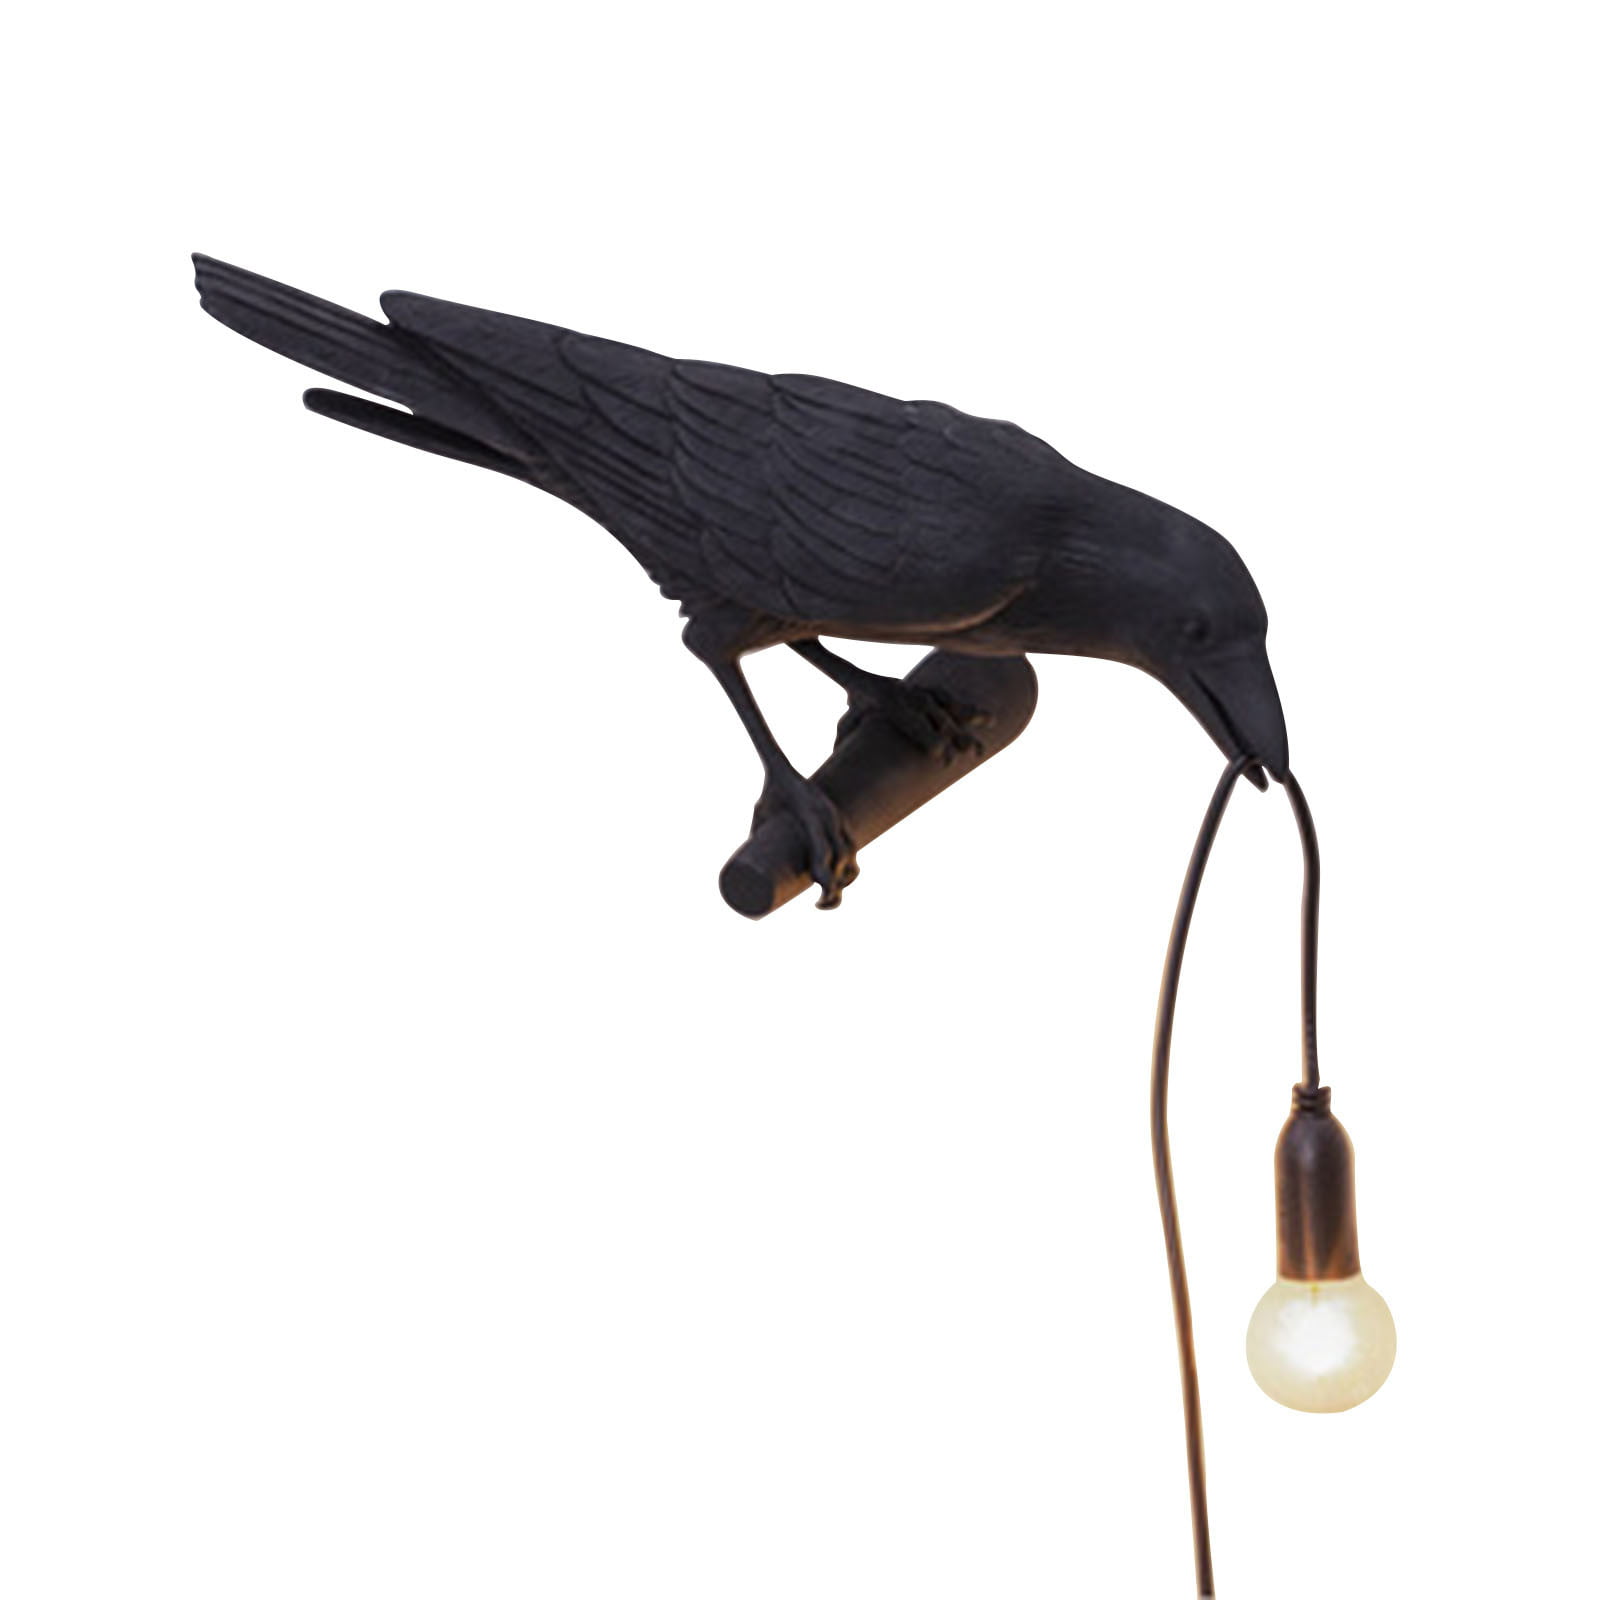 Bird table lamps resin crow wall lights desk lamps scones light fixtures 